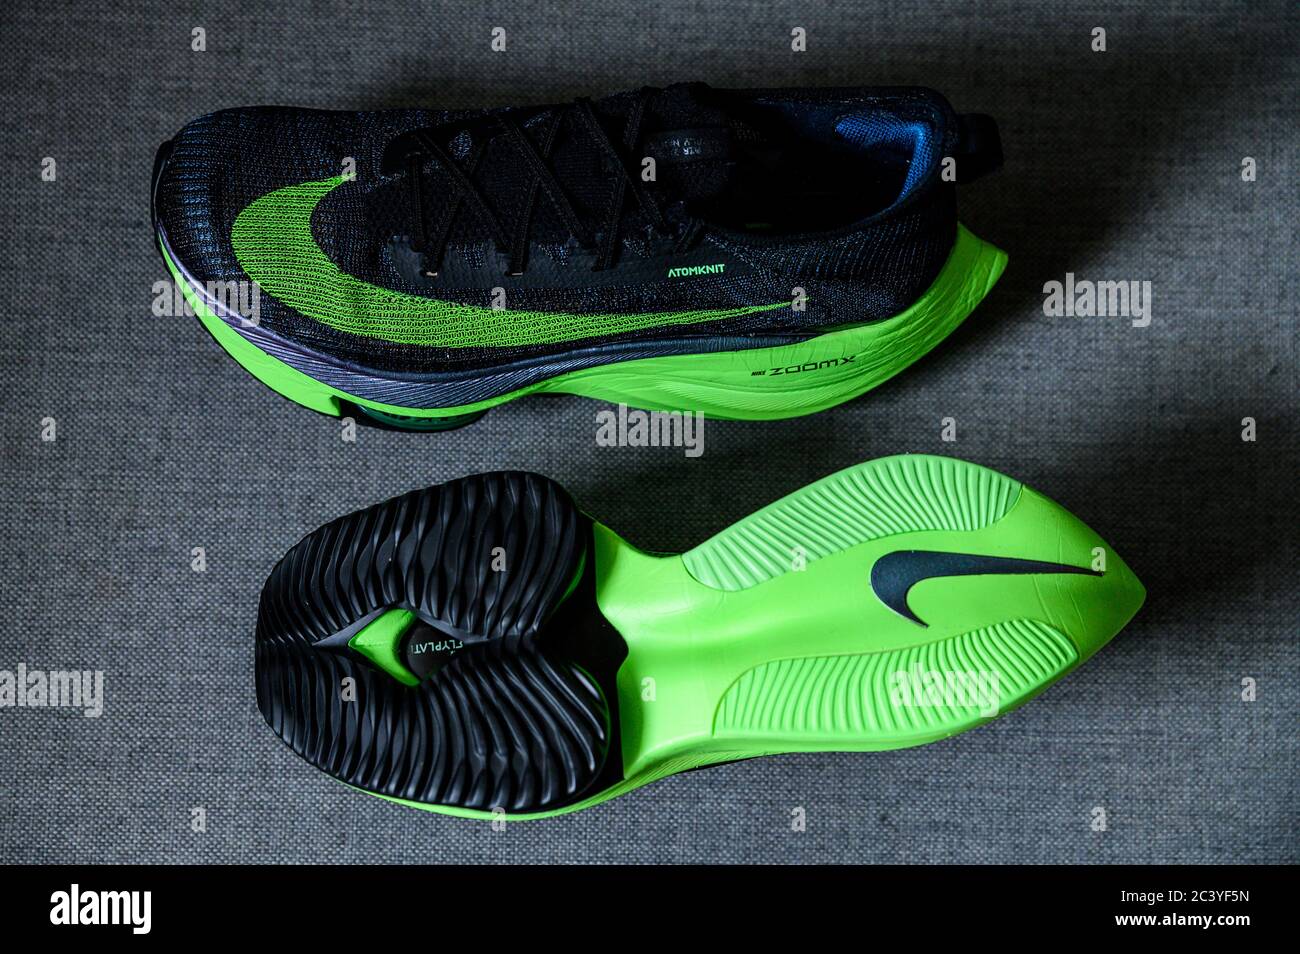 ROMA, ITALIA, JUNIO 23. 2020: Zapatillas de running Nike NEXT%. verde, negro atletismo zapatillas maratón. Detalle de la espuma Zoomx, Zoom Air Fotografía de stock - Alamy